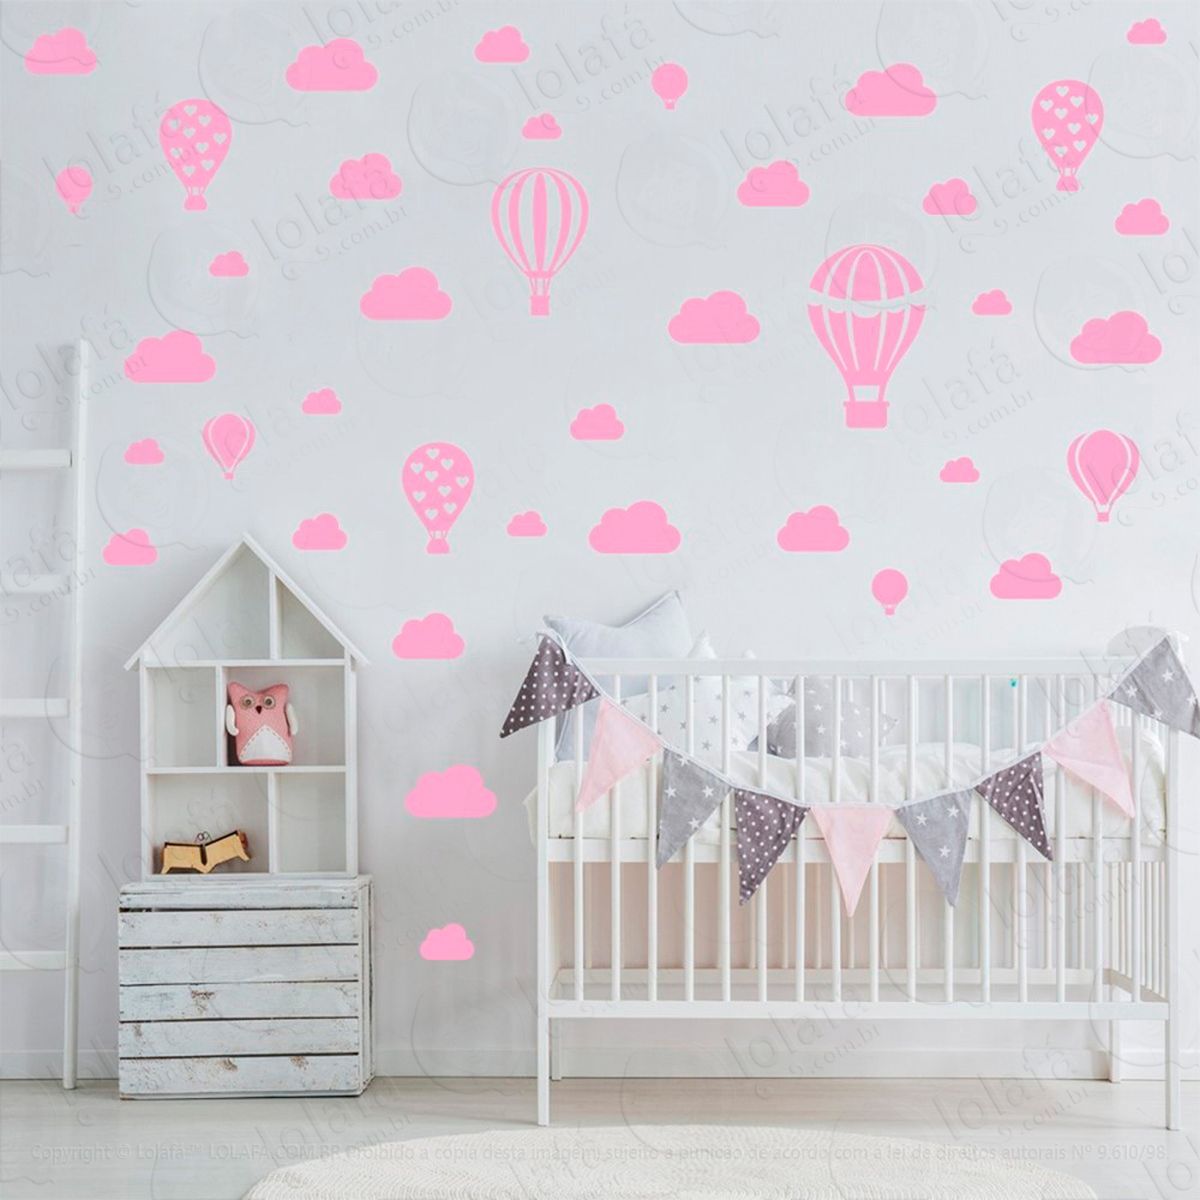 adesivos balões e nuvens 42 peças adesivos para quarto de bebê infantil - mod:949